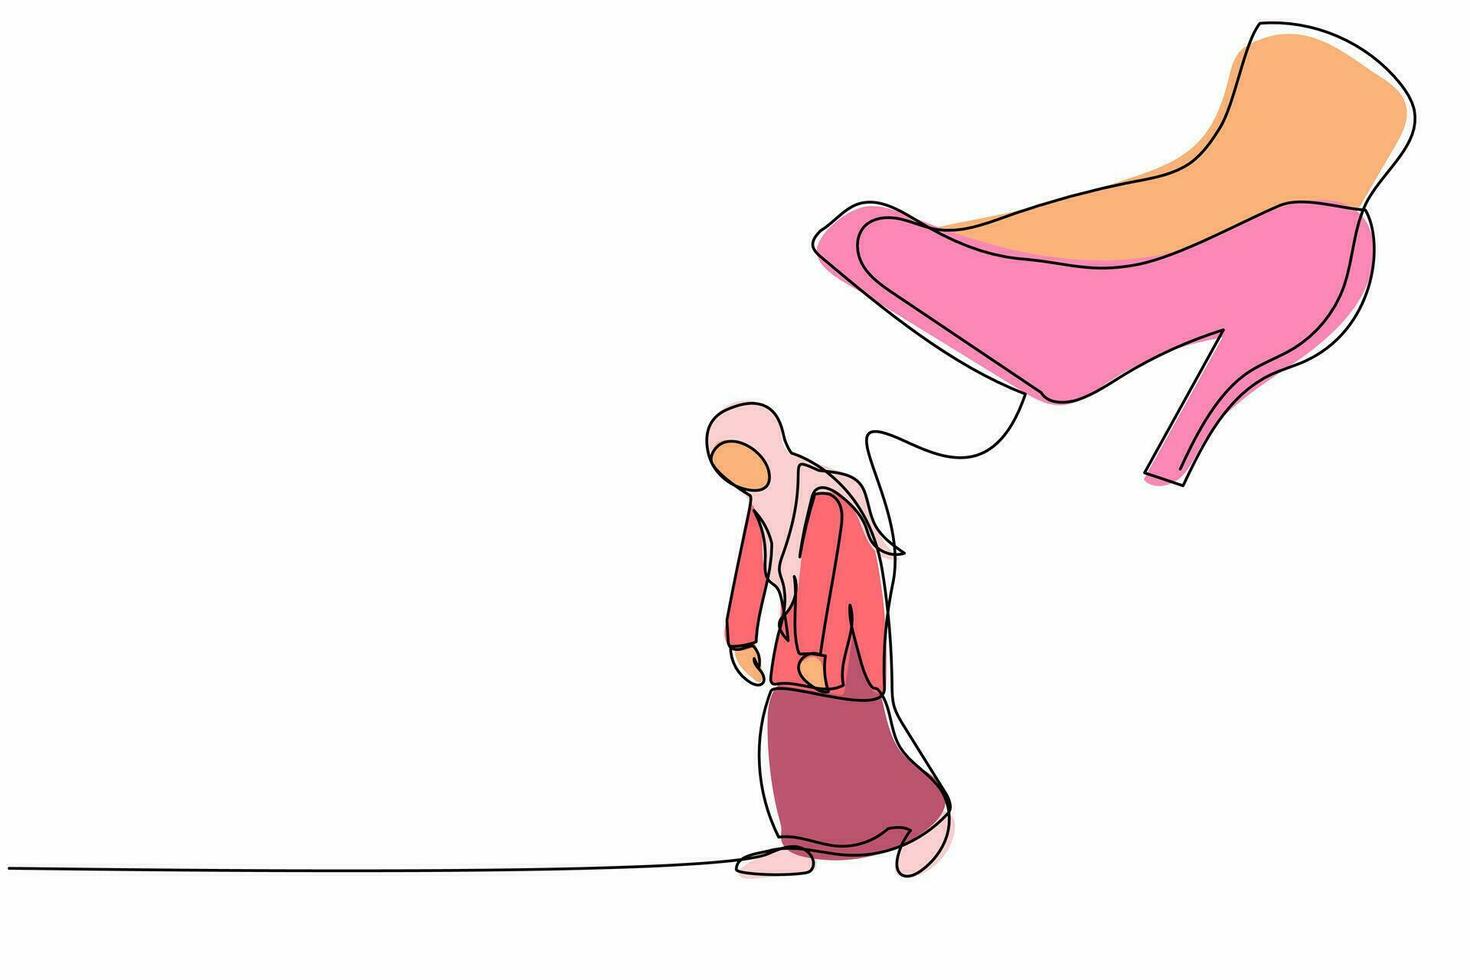 continuo uno linea disegno infelice arabo donna d'affari andando lontano con enorme alto tacchi calciando sua fuori. fatica dipendente essere licenziato e preso a calci fuori. singolo linea disegnare design vettore grafico illustrazione